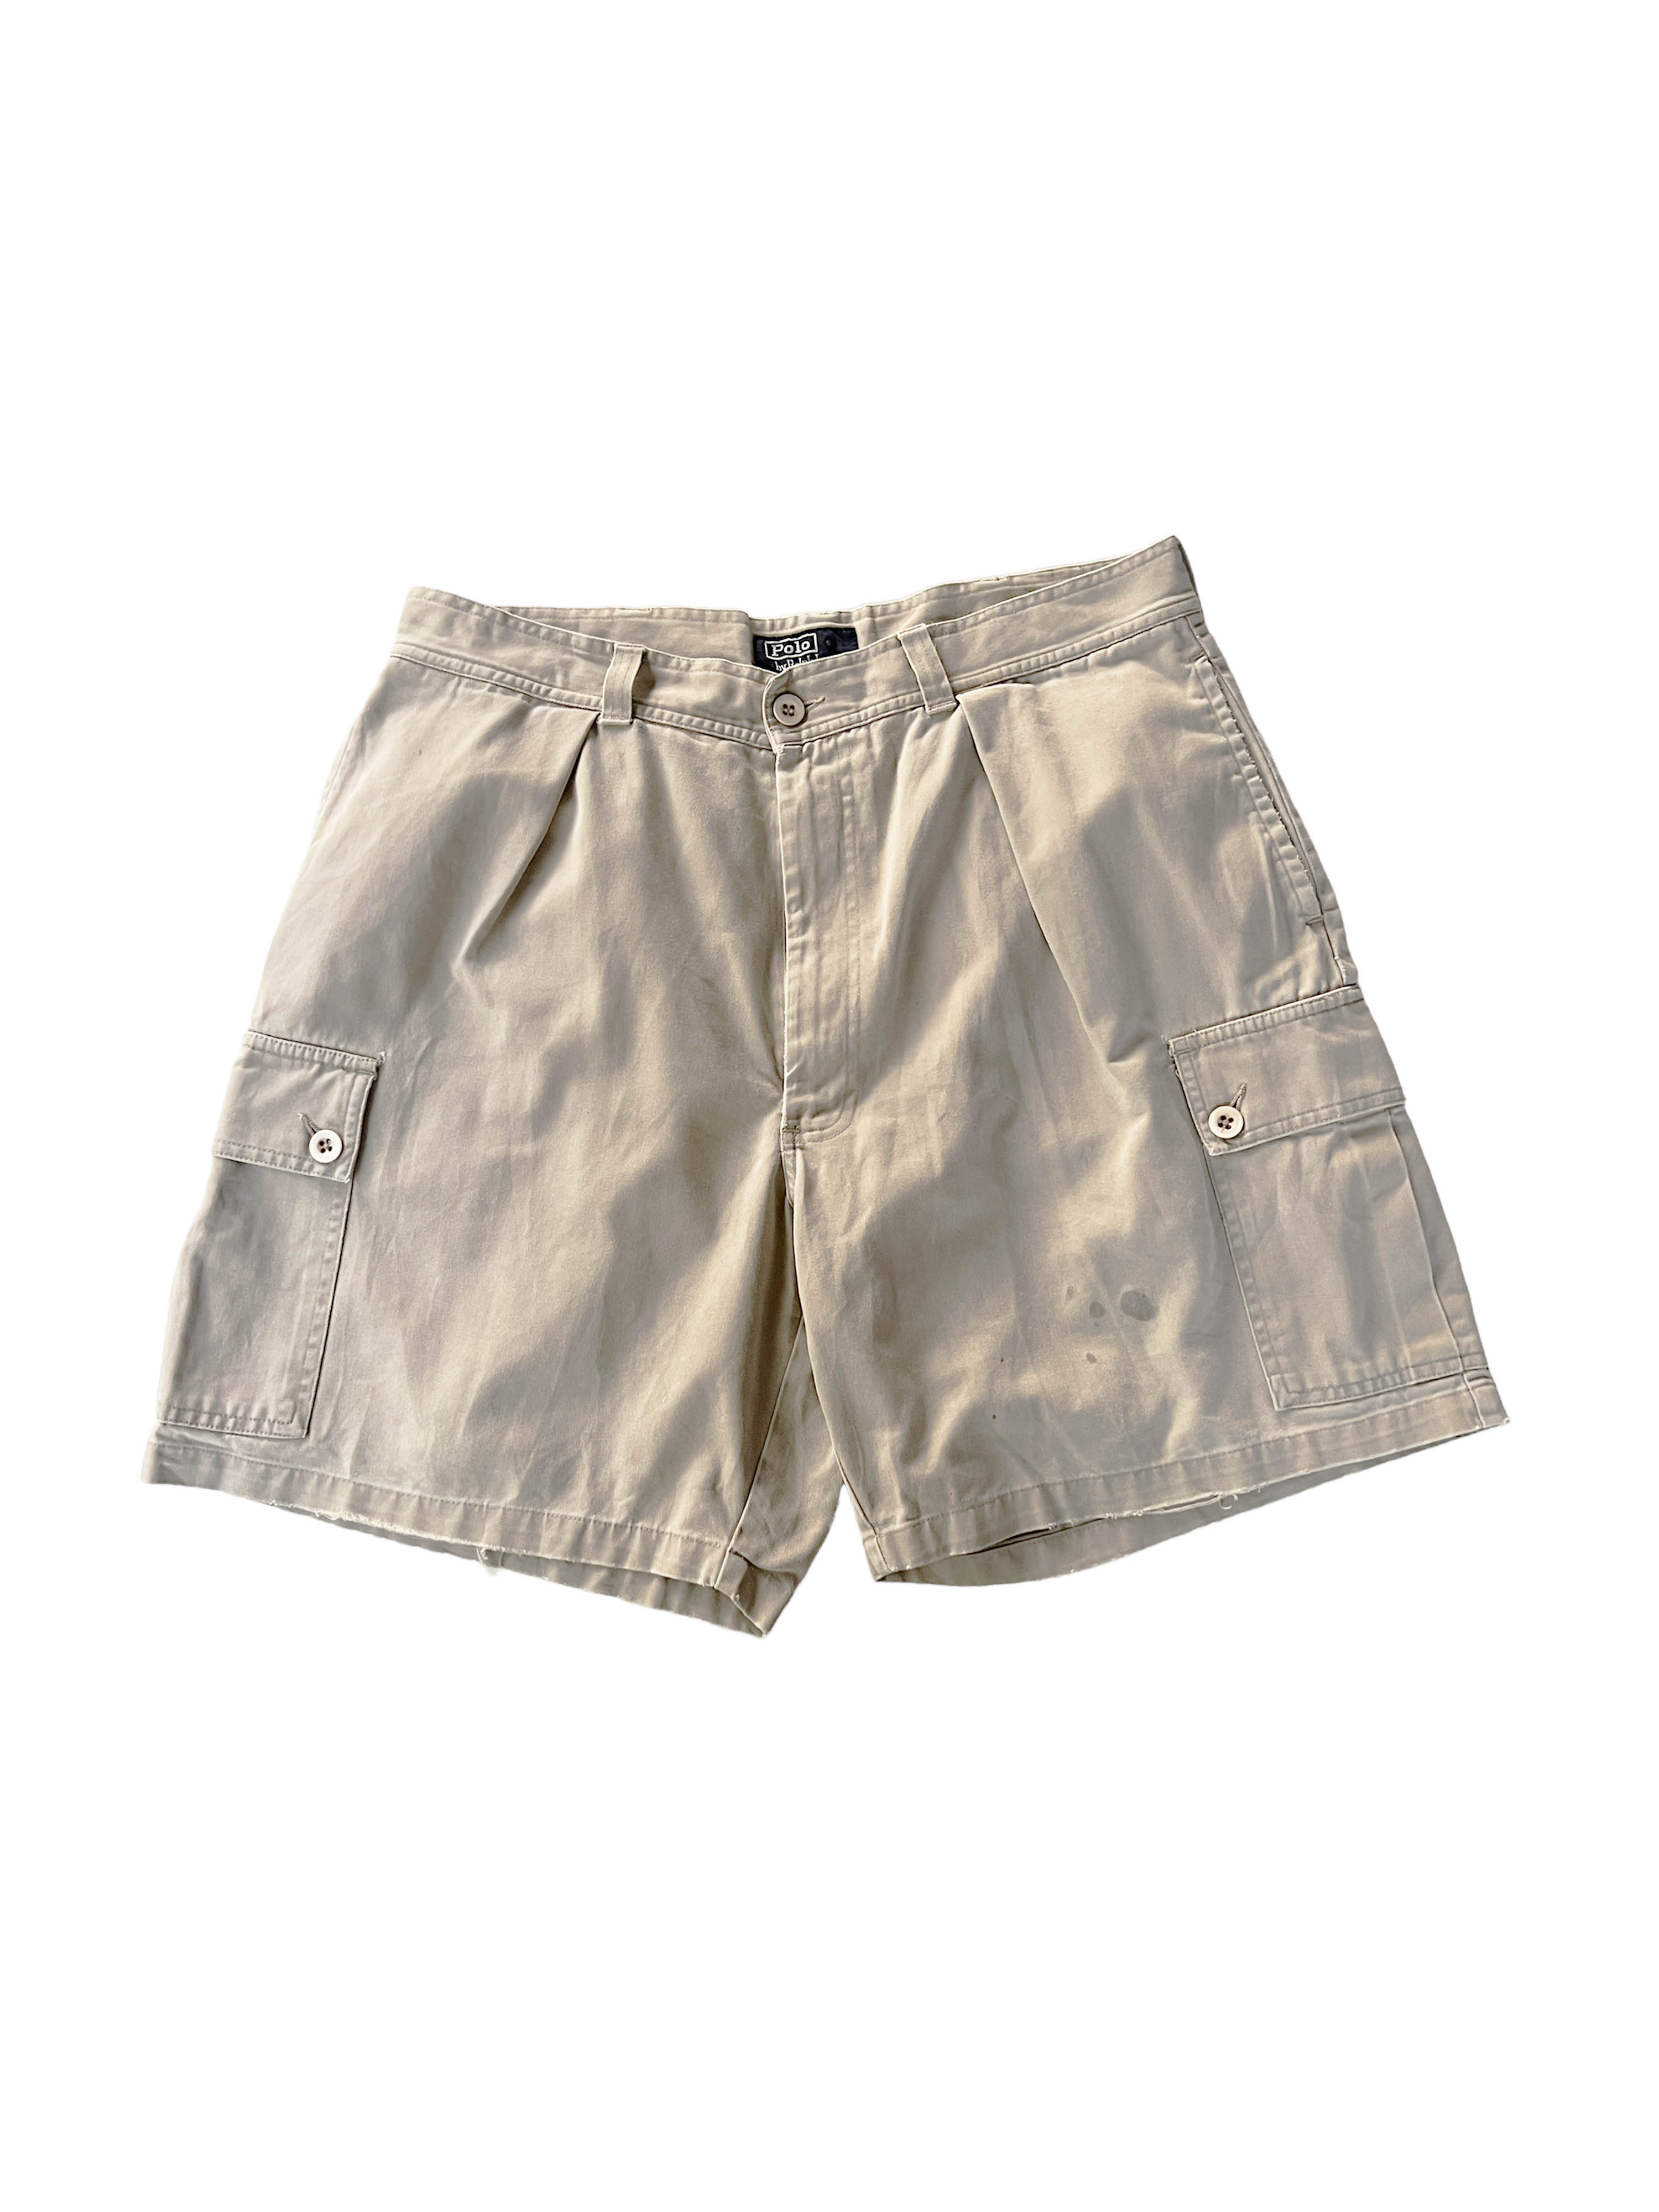 Polo Ralph Lauren cargo shorts